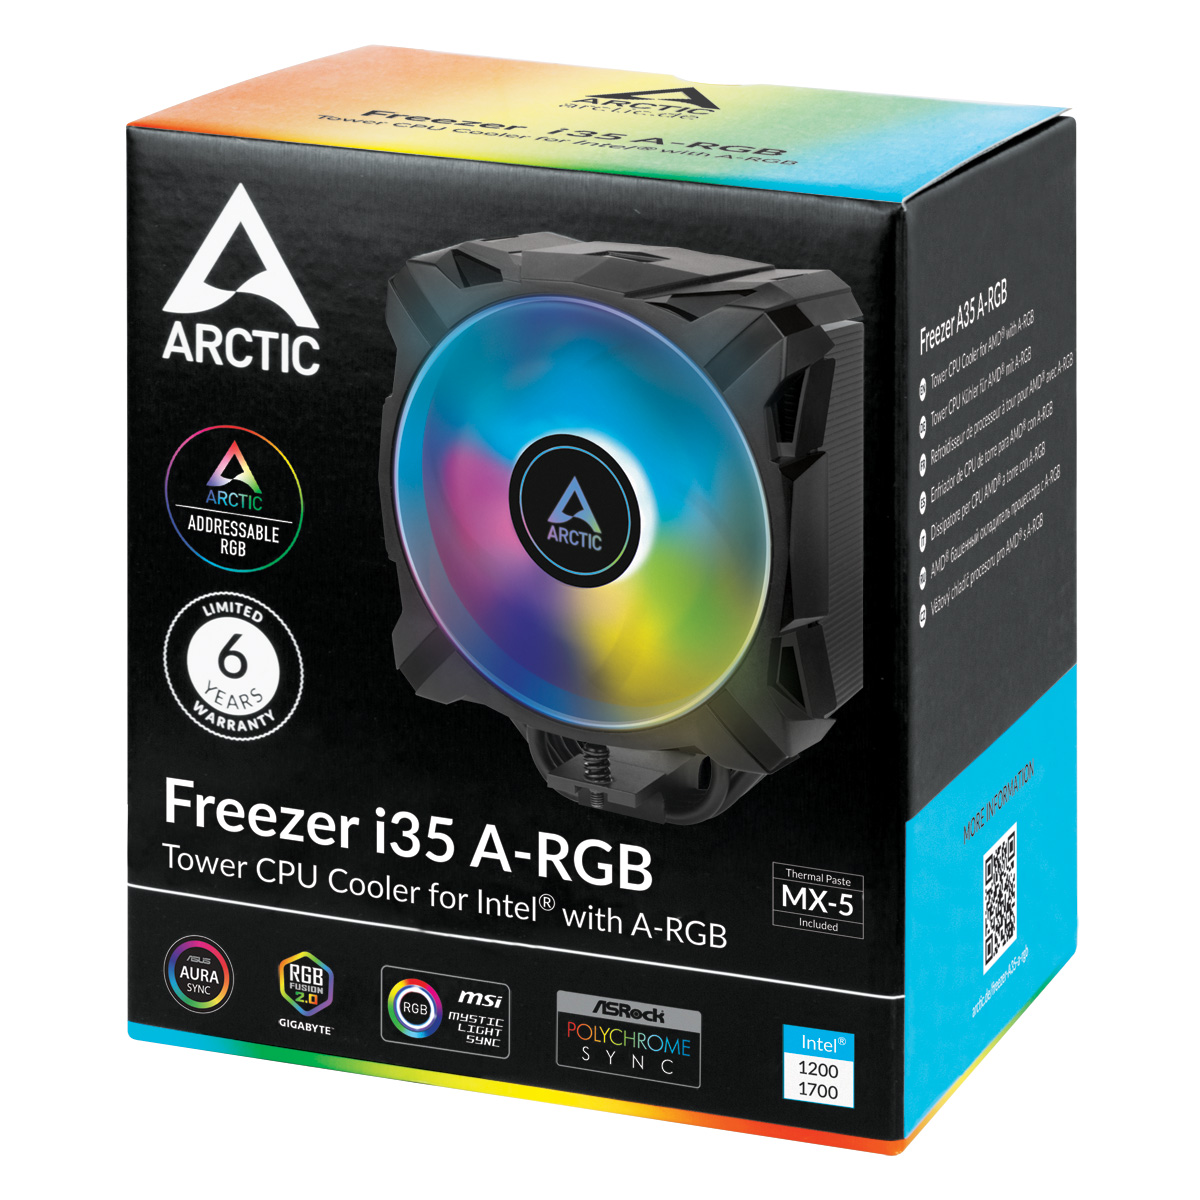 Freezer i35 A-RGB